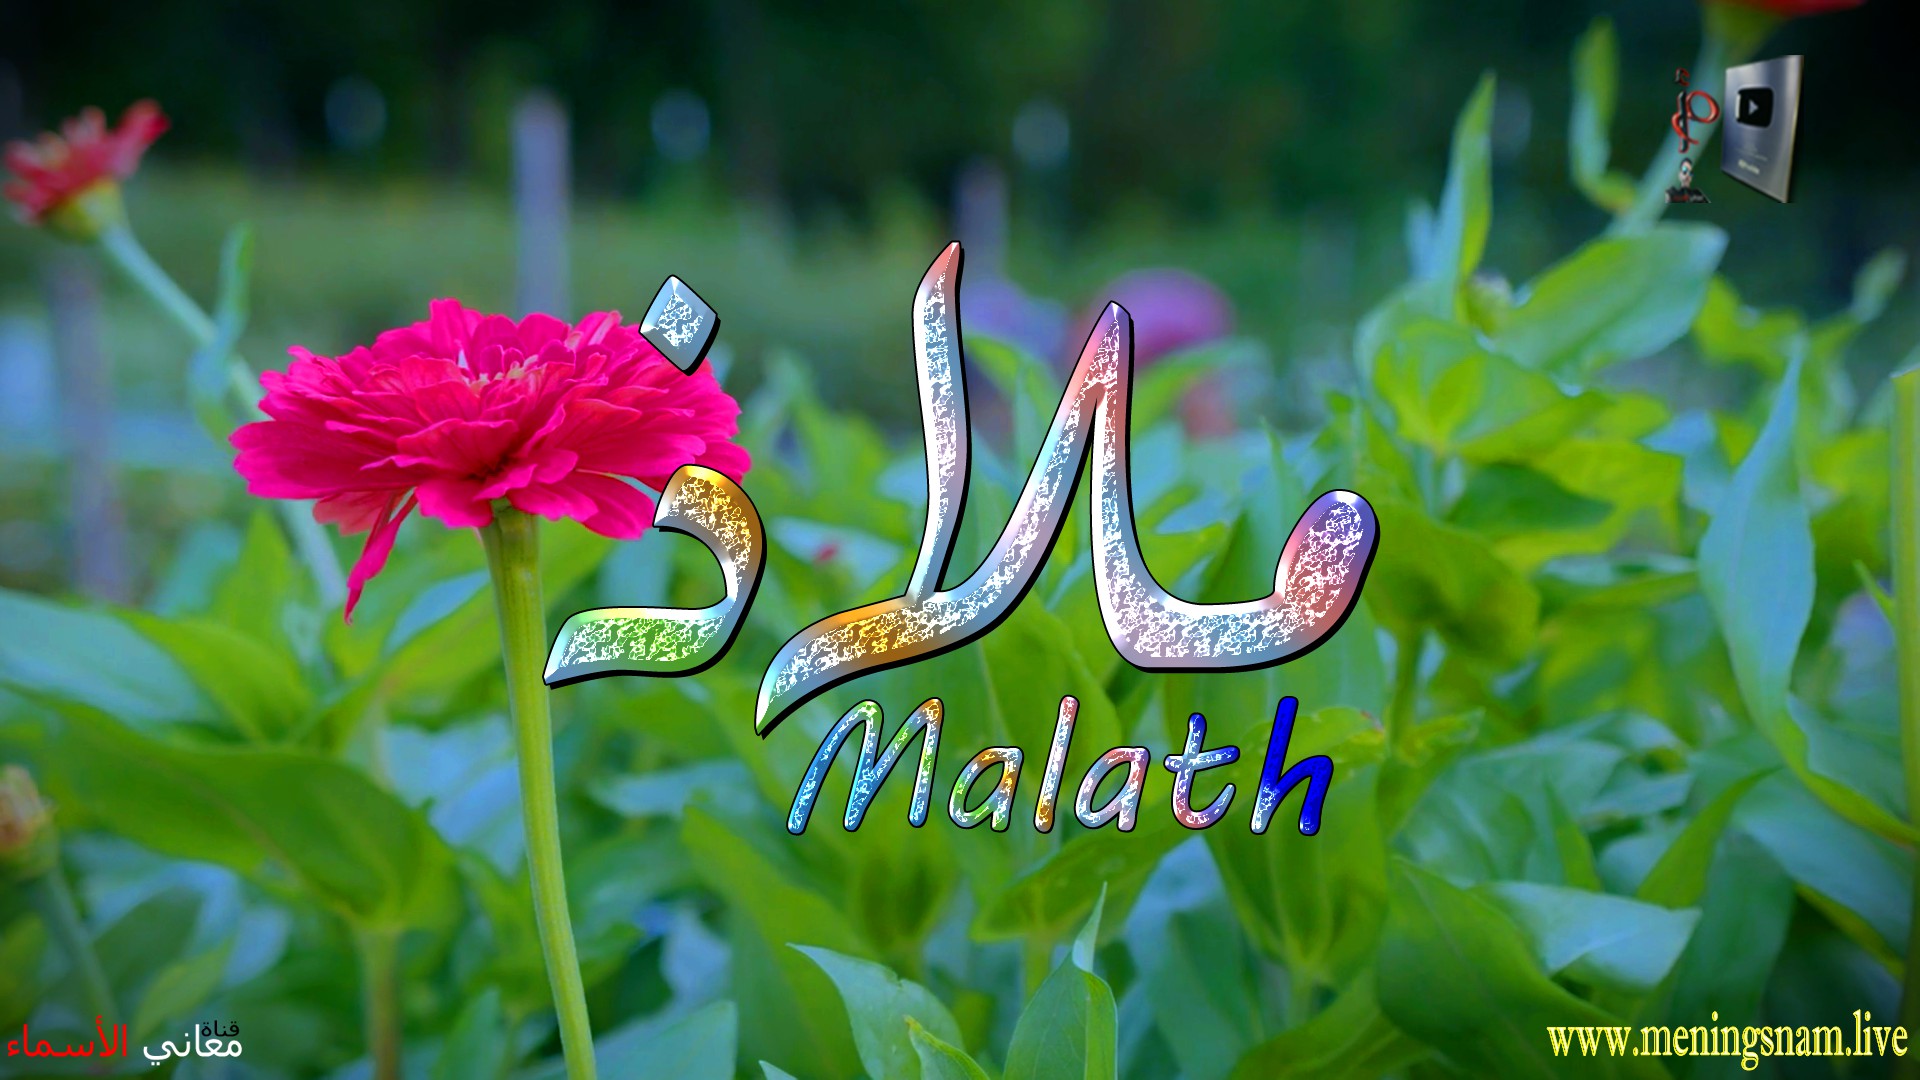 معنى اسم, ملاذ, وصفات, حاملة, وحامل, هذا الاسم, Malath,